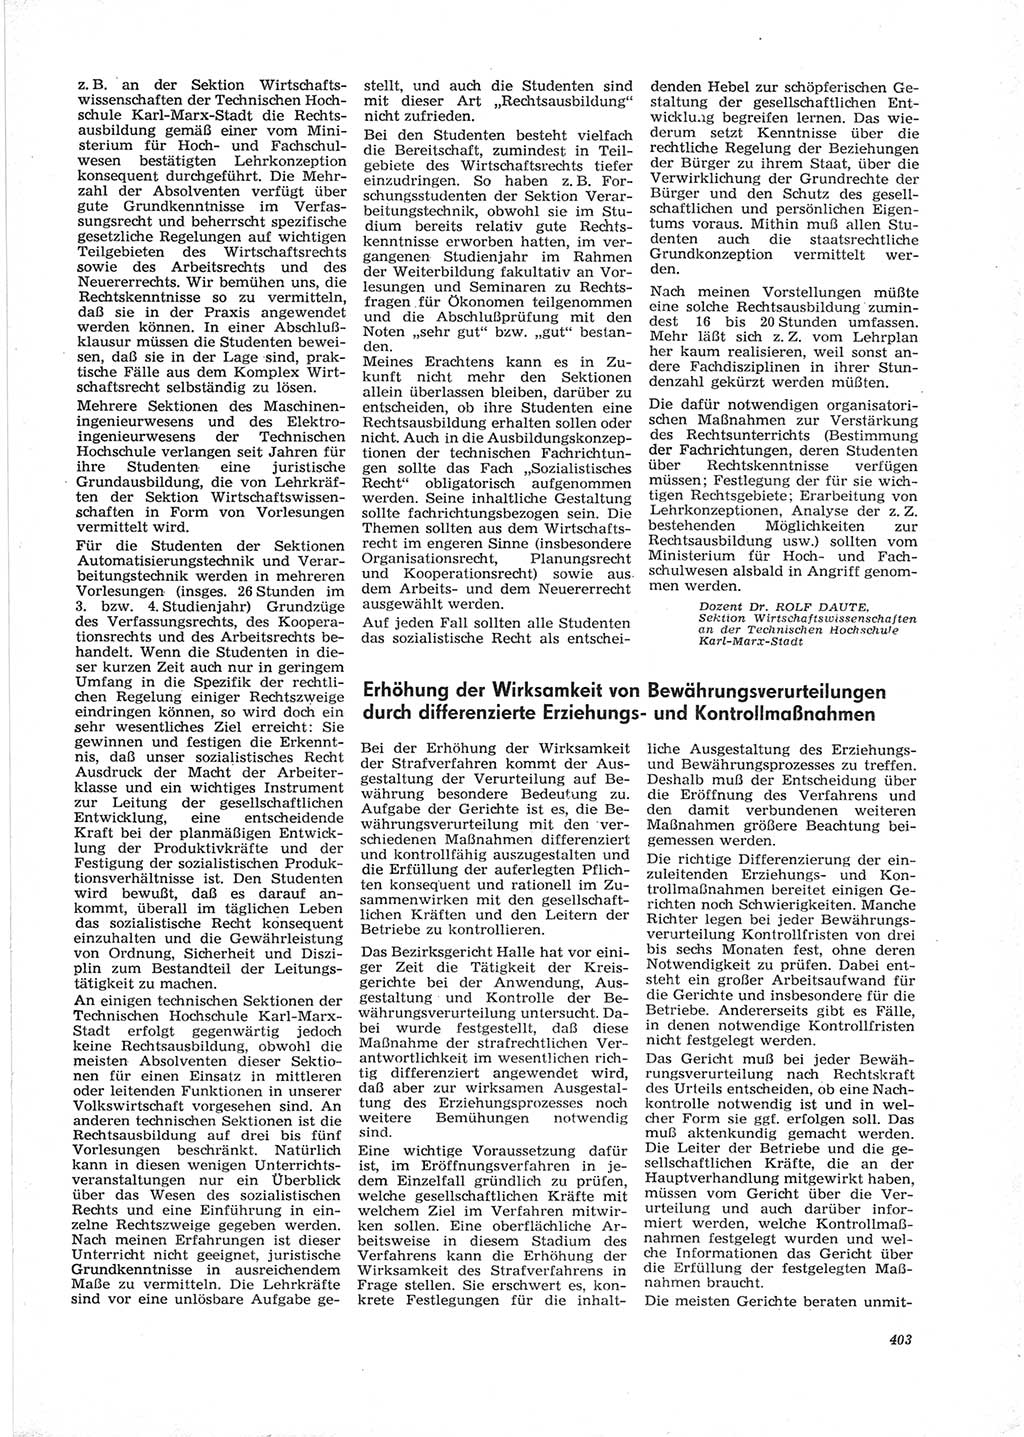 Neue Justiz (NJ), Zeitschrift für Recht und Rechtswissenschaft [Deutsche Demokratische Republik (DDR)], 28. Jahrgang 1974, Seite 403 (NJ DDR 1974, S. 403)